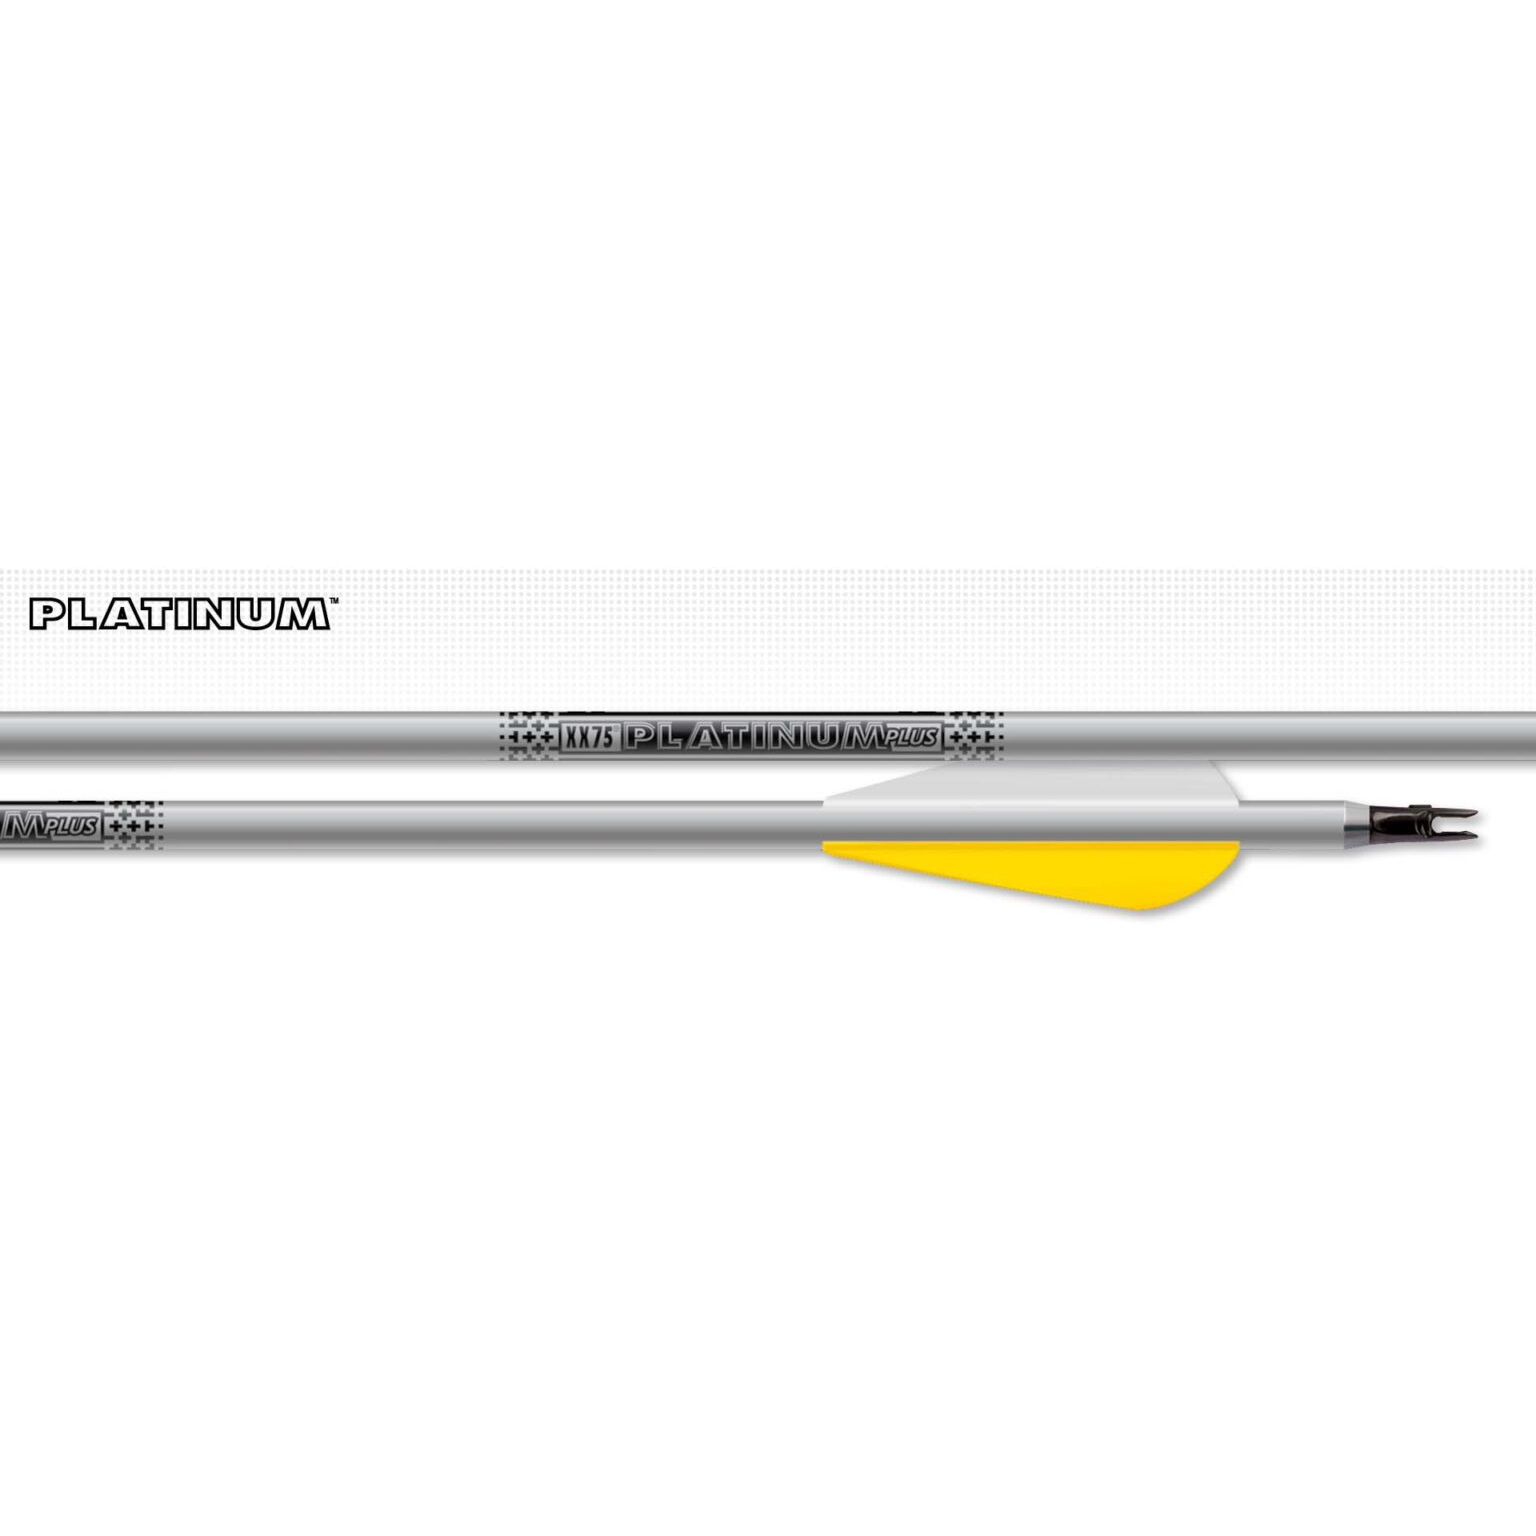 Стрела XX75 Platinum Plus, размер 2315, пластиковое оперение 4" форма Parabolic, хвостовик, вклеивае